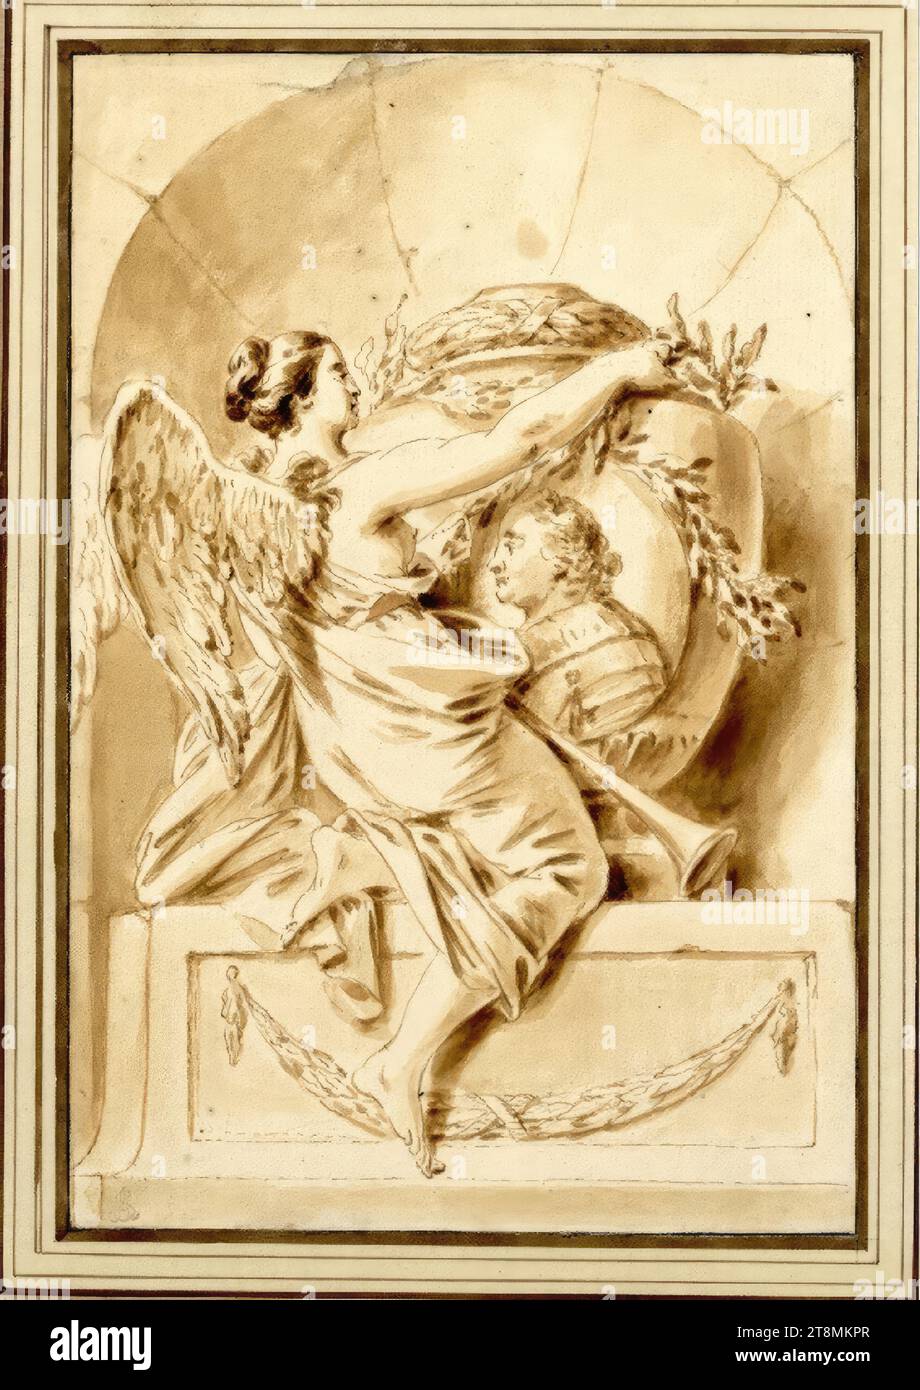 Memoriale al maresciallo Keith, Bernhard Rode (Berlino 1725 - 1797 Berlino), disegno, penna e inchiostro in giallo-marrone, lavato, 20,7 x 13,9 cm, l.l. duca Alberto di Sassonia-Teschen Foto Stock